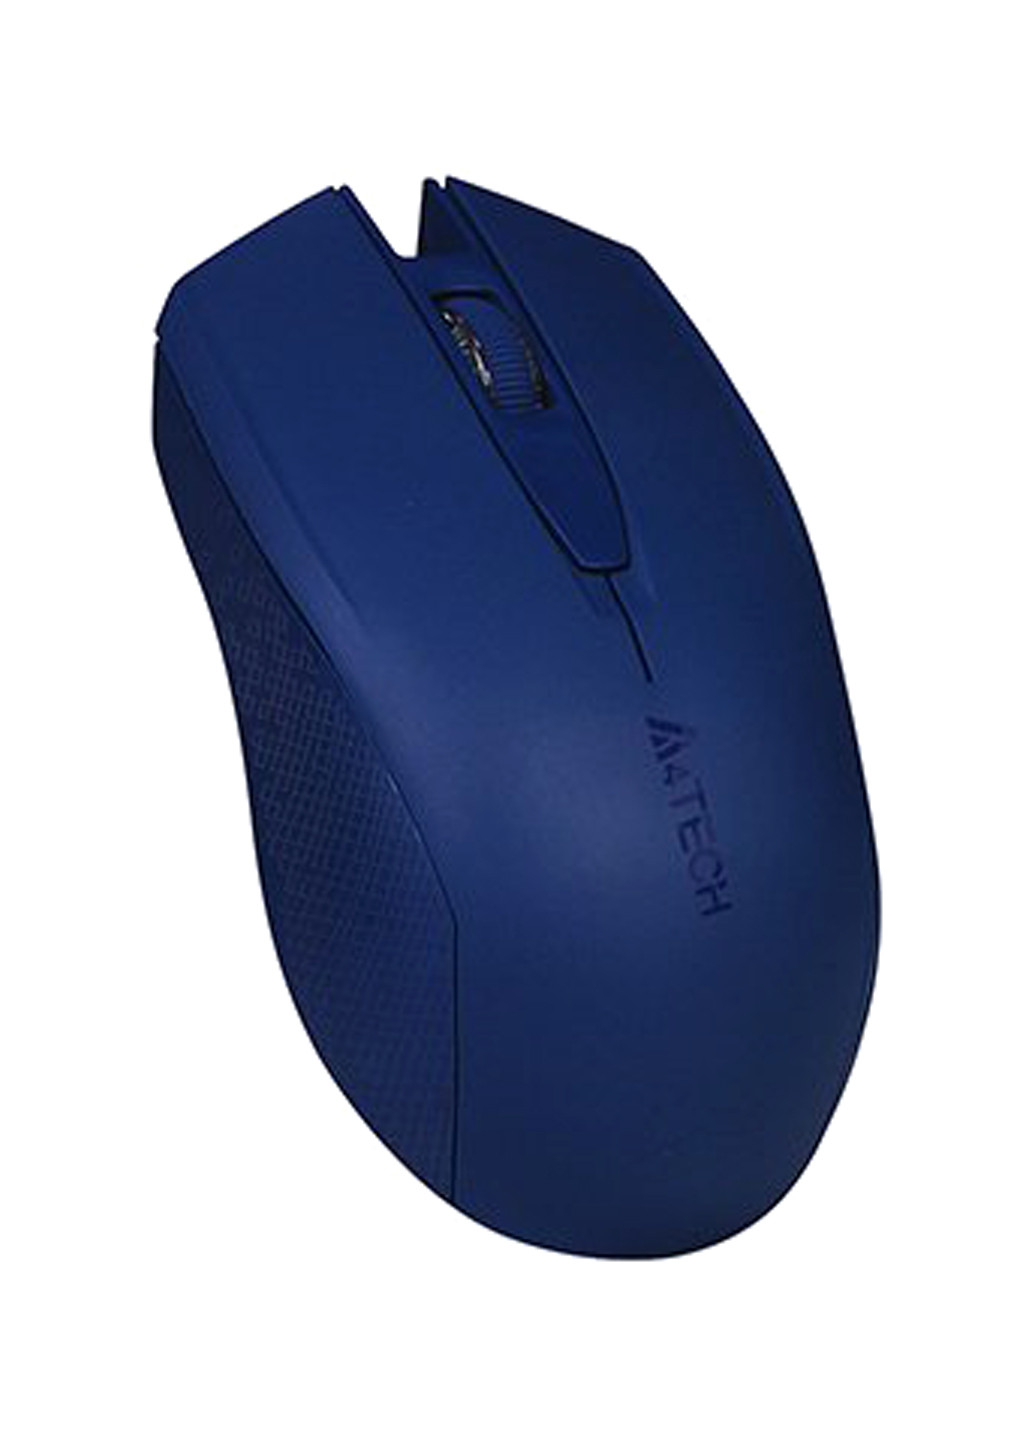 Миша бездротова A4Tech g3-760n (blue) (130666152)